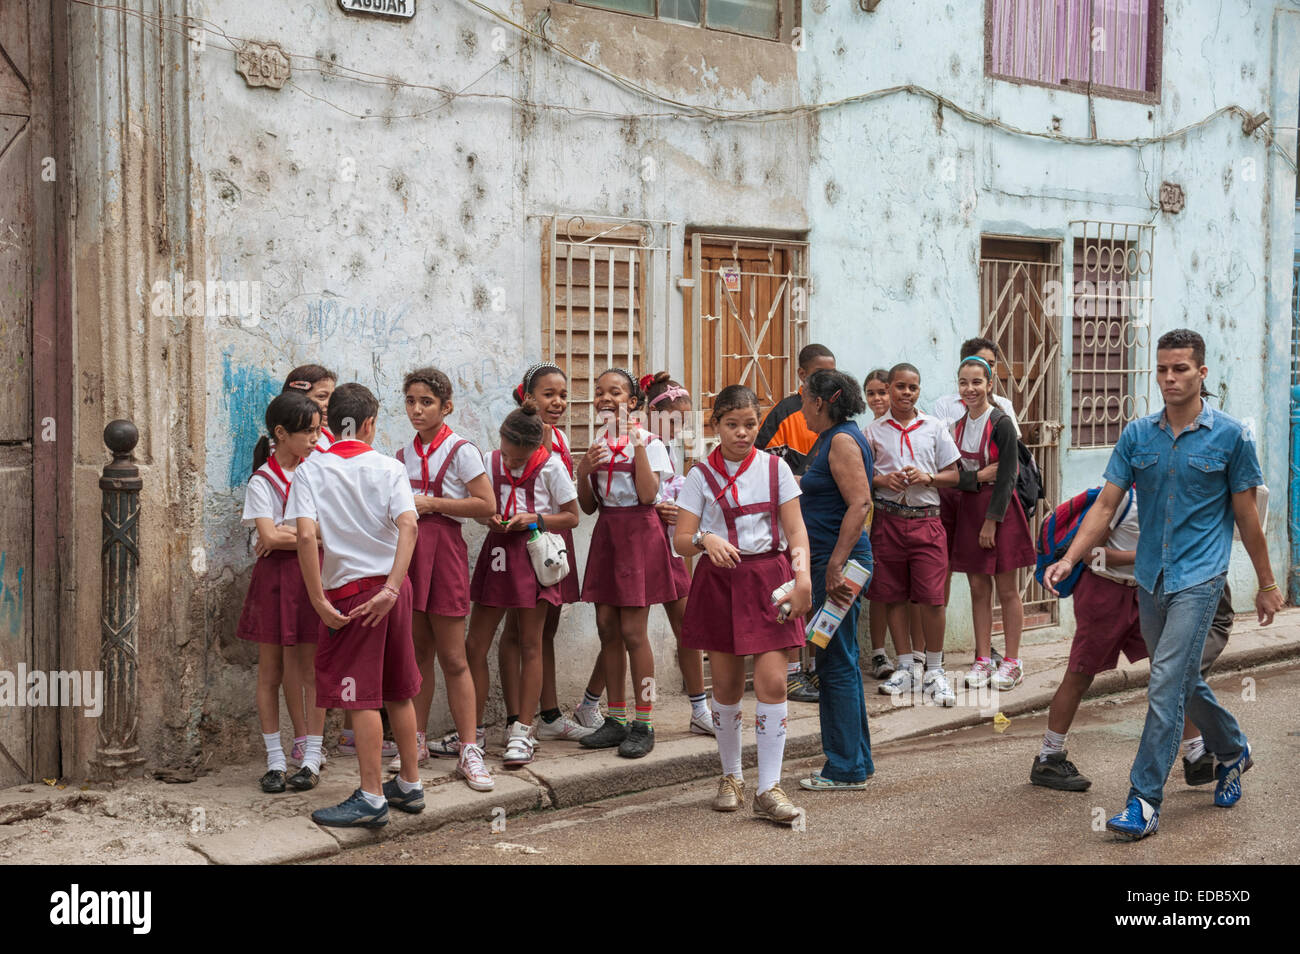 School children in their uniforms in Havana, Cuba La Habana Vieja UNESCO World Heritage Site Stock Photo